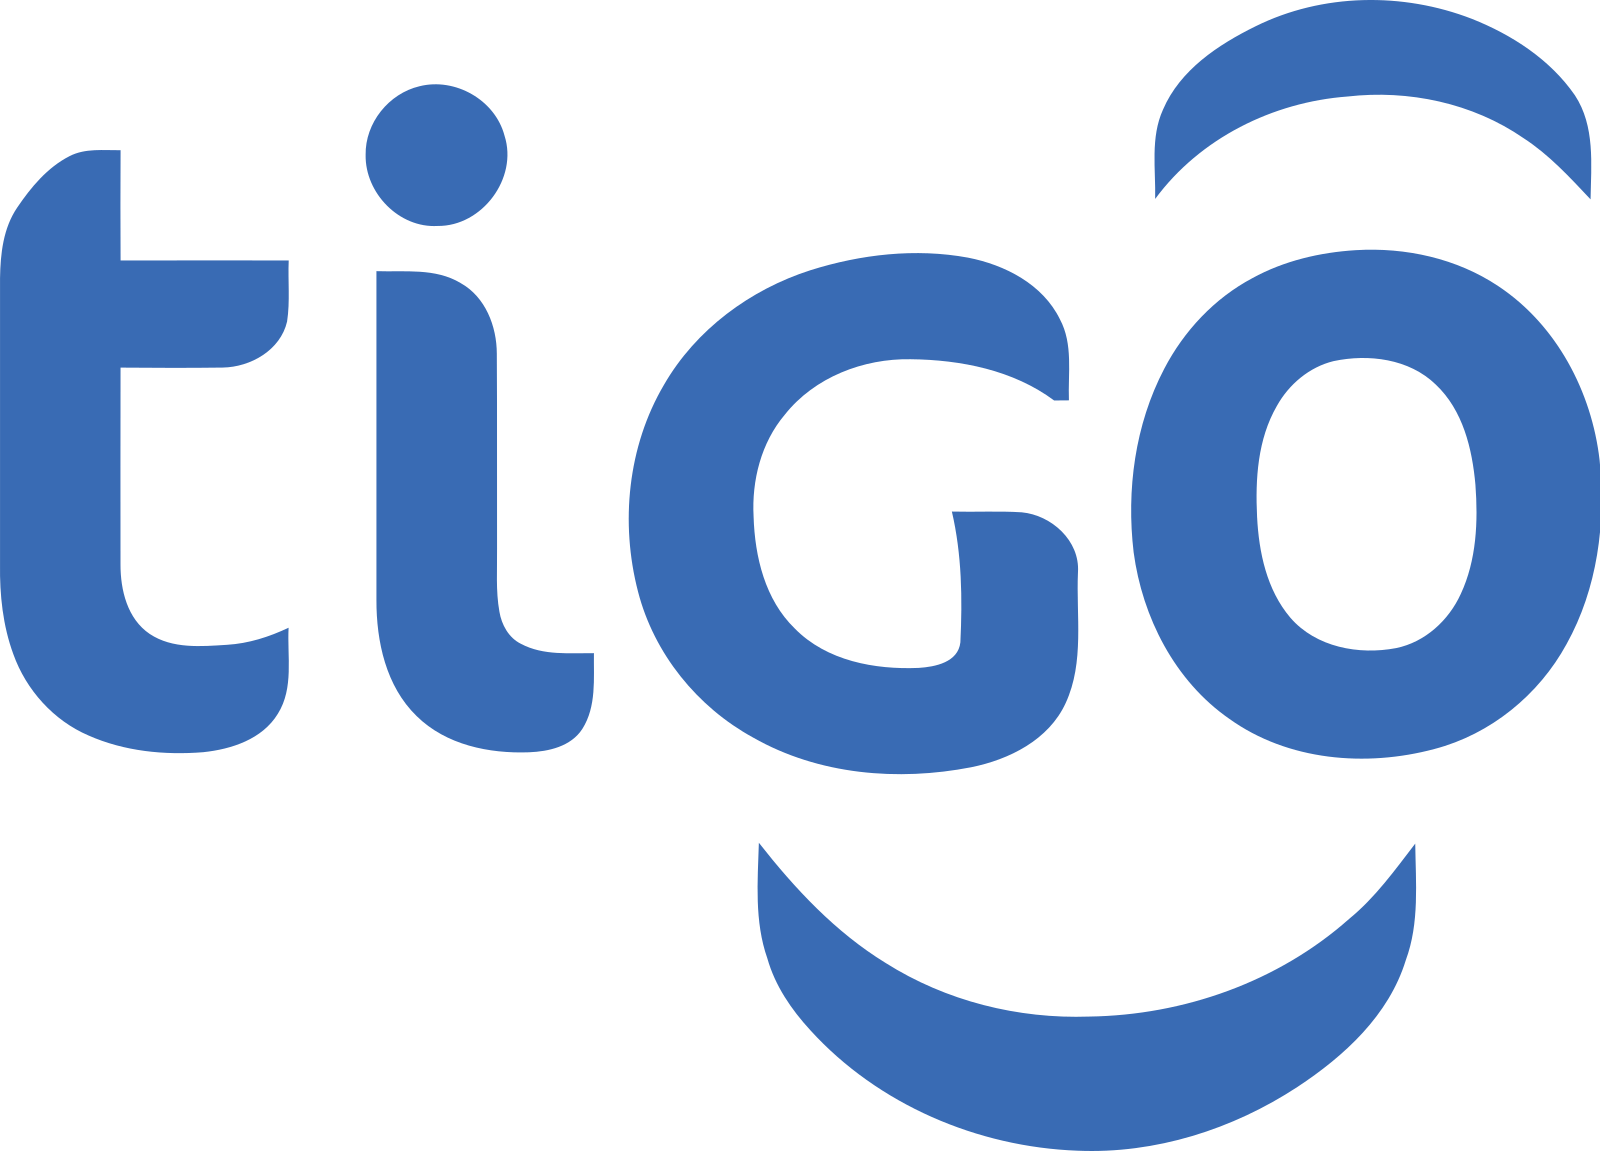 tigo logo 4 - Tigo Logo